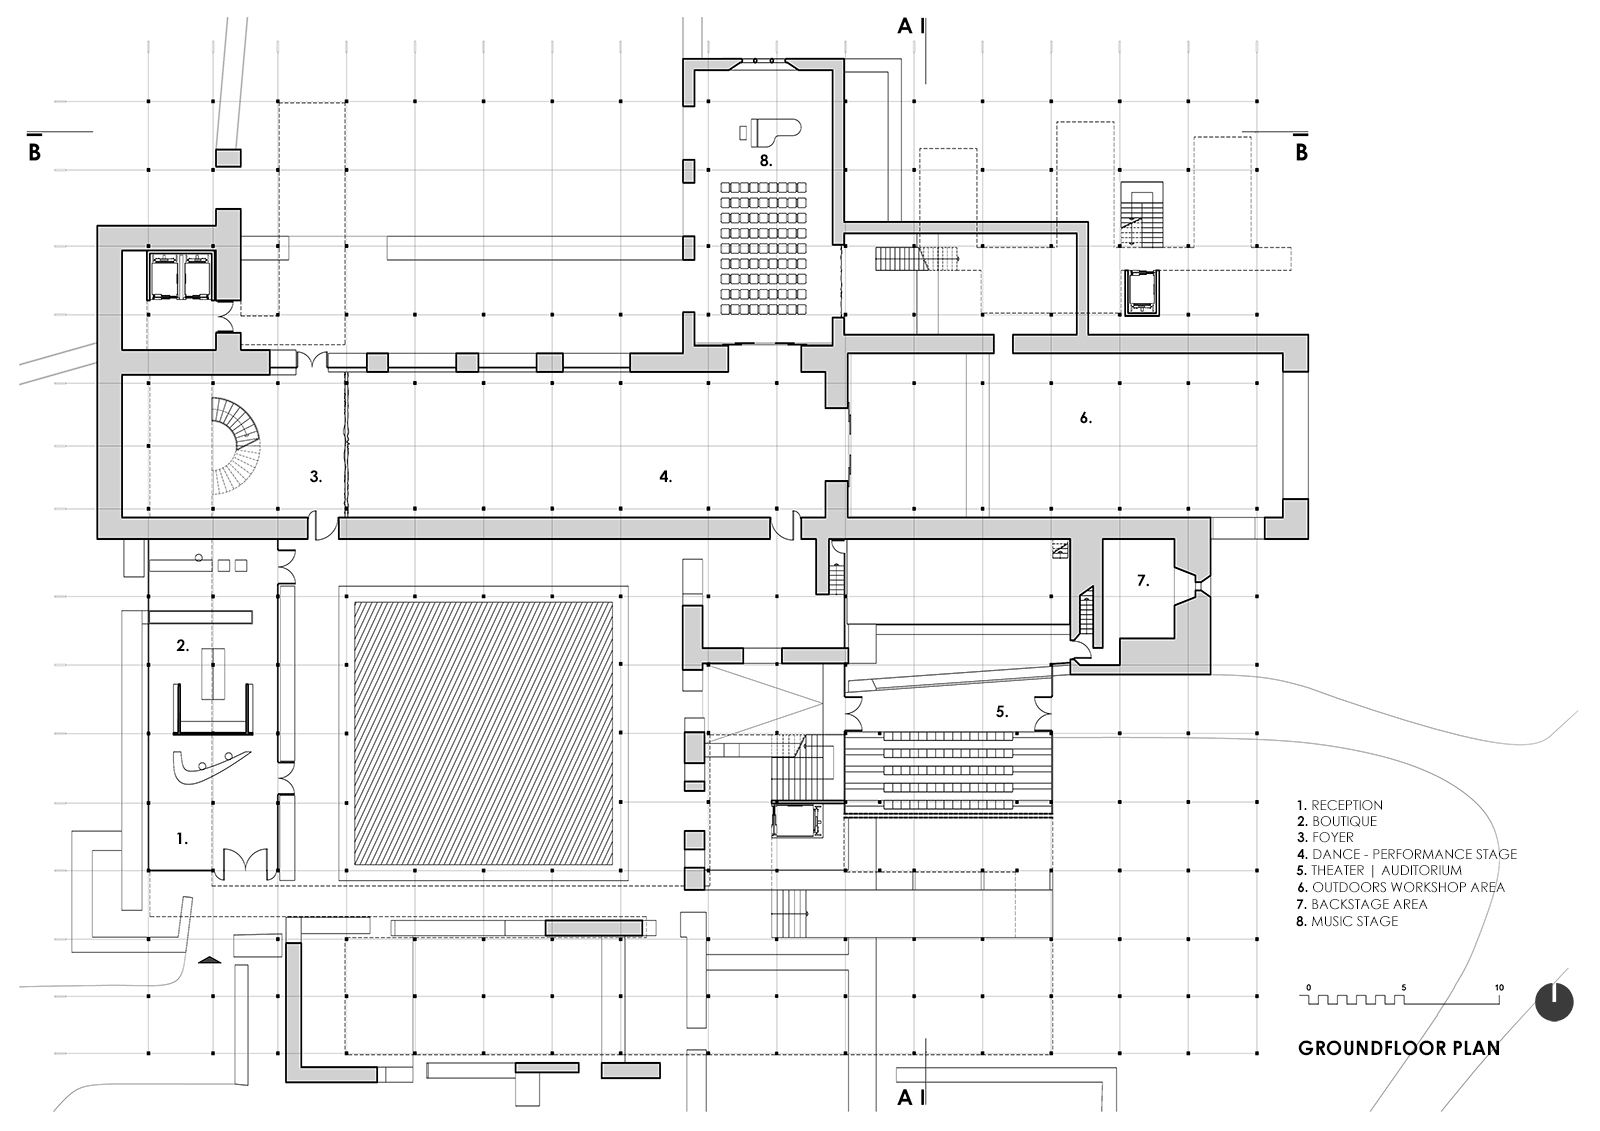 Archisearch Kell’s Art Cathedral - Η πρόταση των Μιχάλη Πανταζή και Μάριο Τσιγώνια που απέσπασε διάκριση στον Αρχιτεκτονικό Διαγωνισμό.